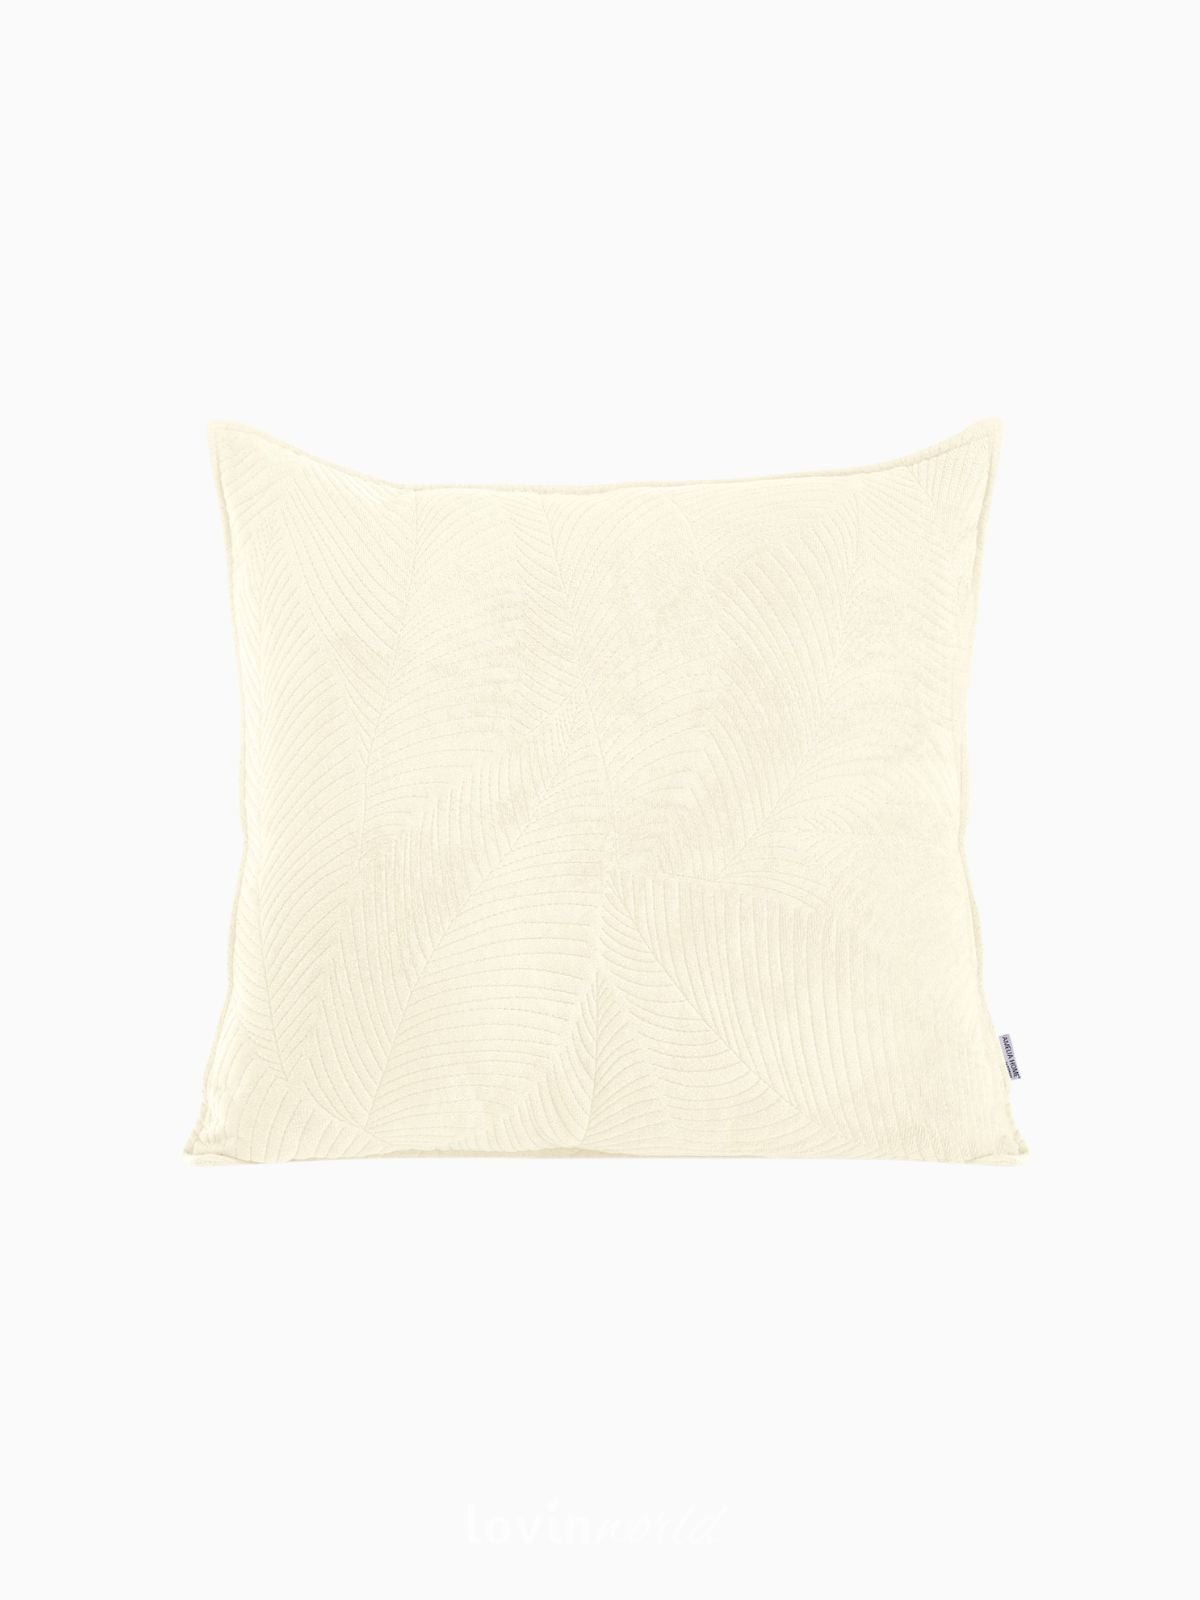 Cuscino decorativo in velluto Palsha, colore beige chiaro 45x45 cm.-1